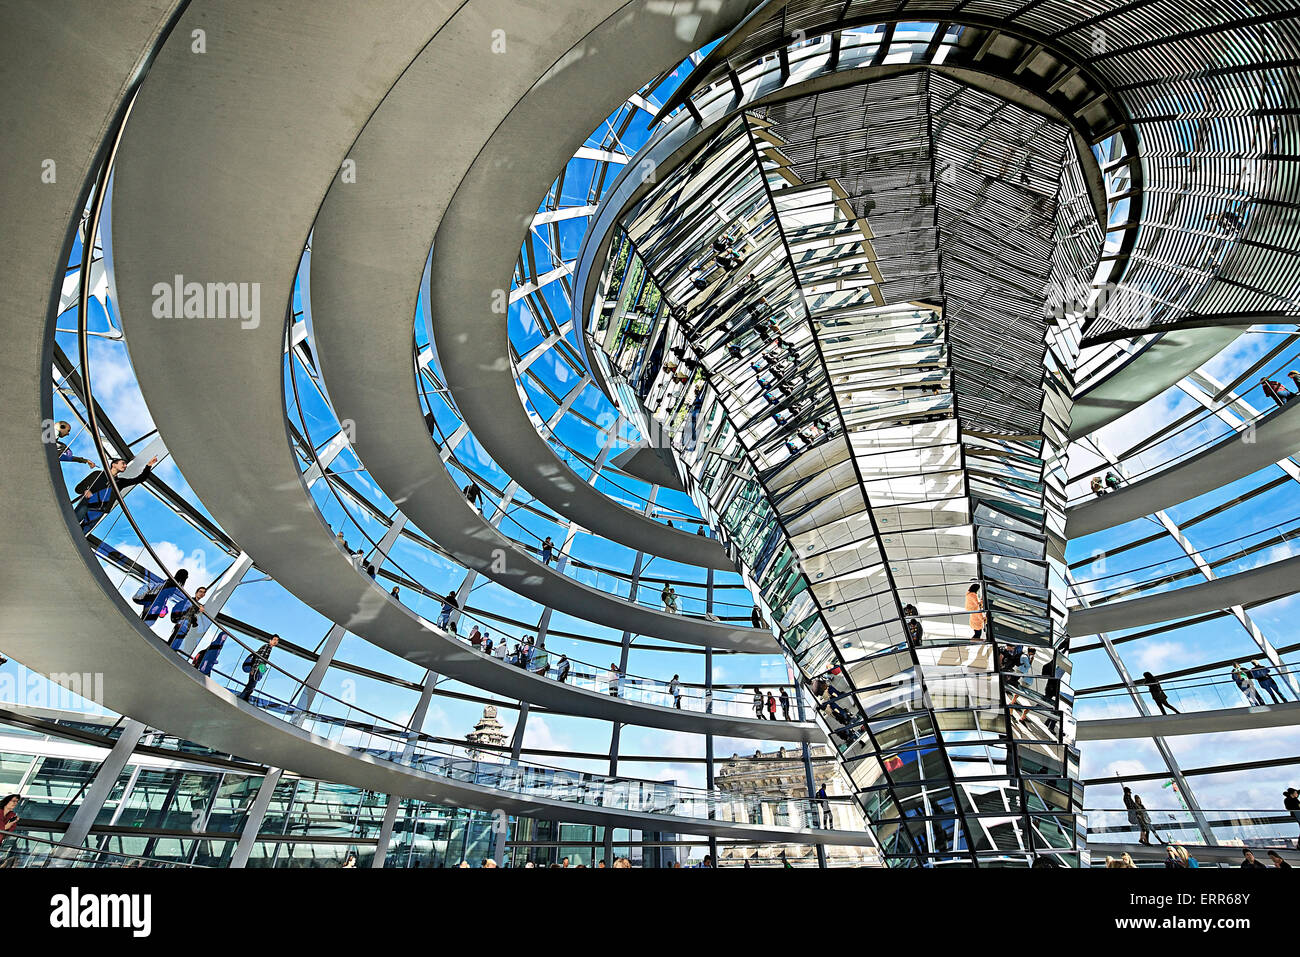 Alemania, Berlín, el Reichstag, en el interior de la cúpula de cristal por el arquitecto Norman Foster. Foto de stock